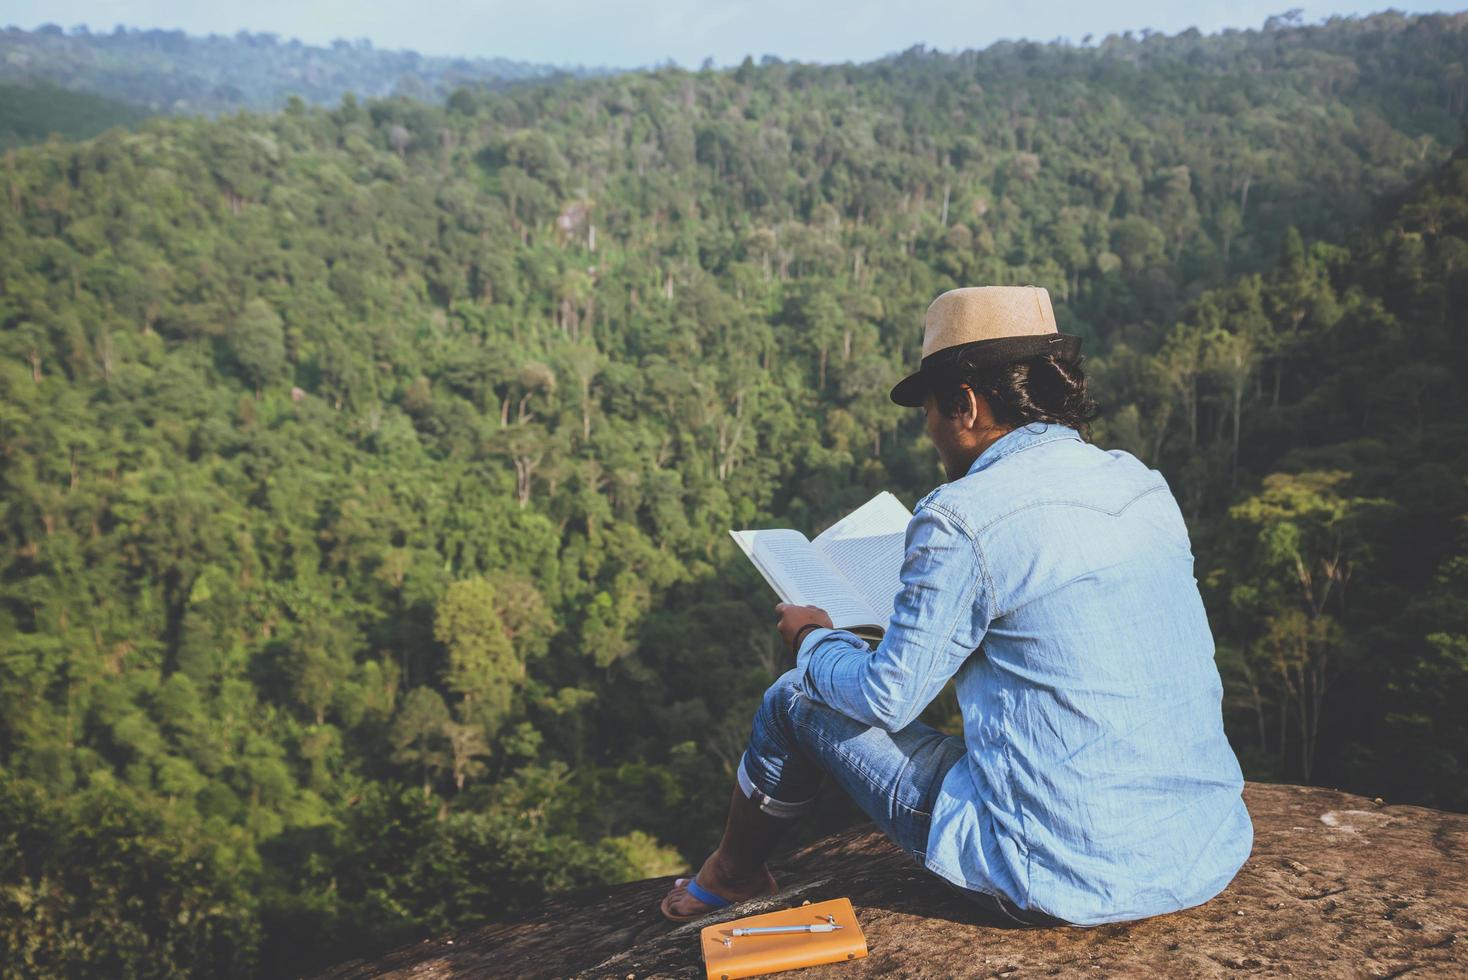 viaje de hombre asiático relajarse en las vacaciones. asientos relajarse leer libros sobre acantilados rocosos. en la montaña. En Tailandia foto